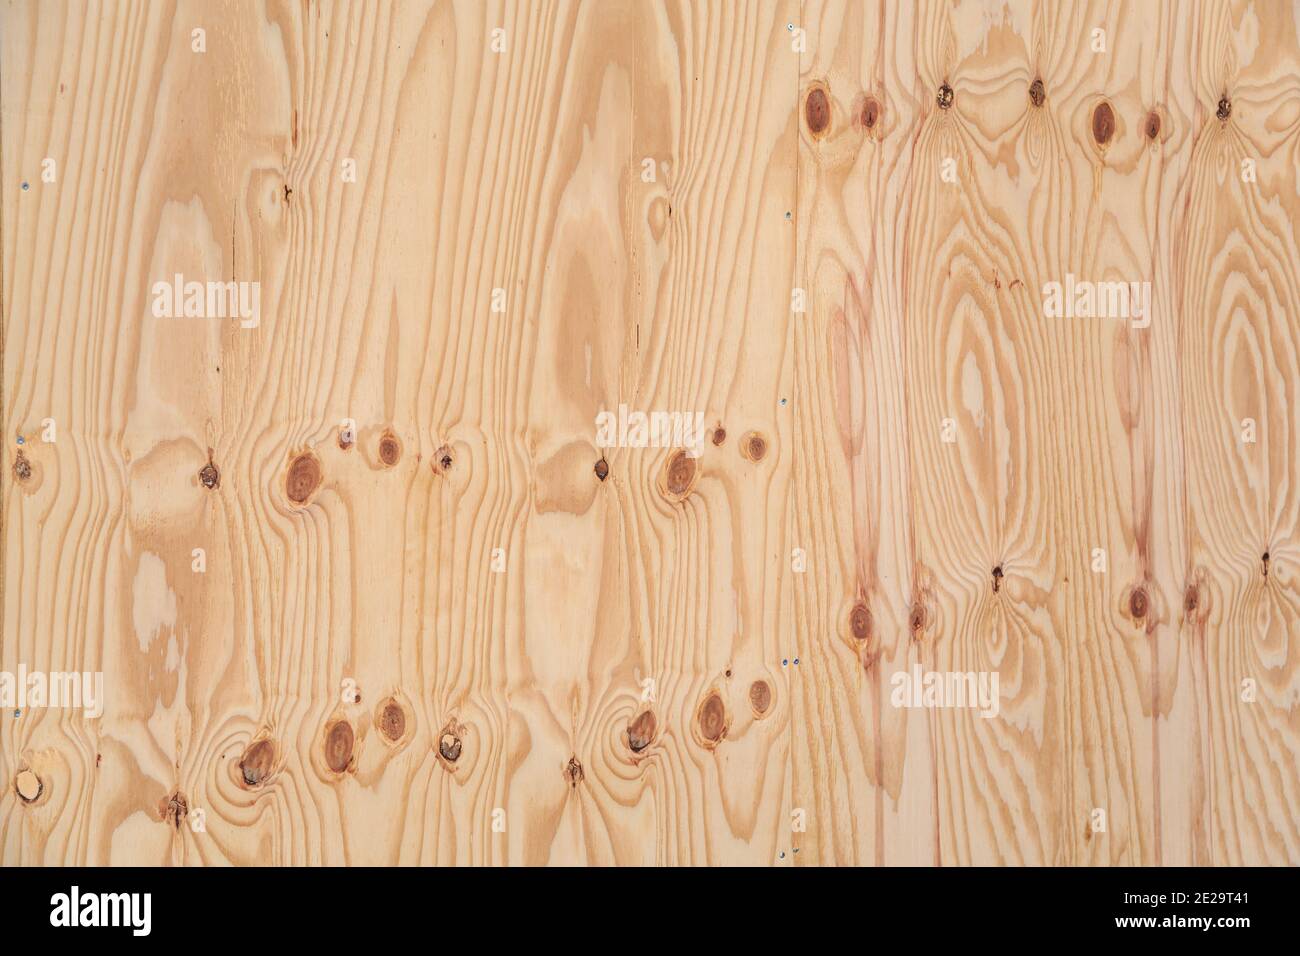 Birkenholz Hintergrund. Hochauflösendes Bild von Birke Sperrholz Textur mit Knoten. Stockfoto